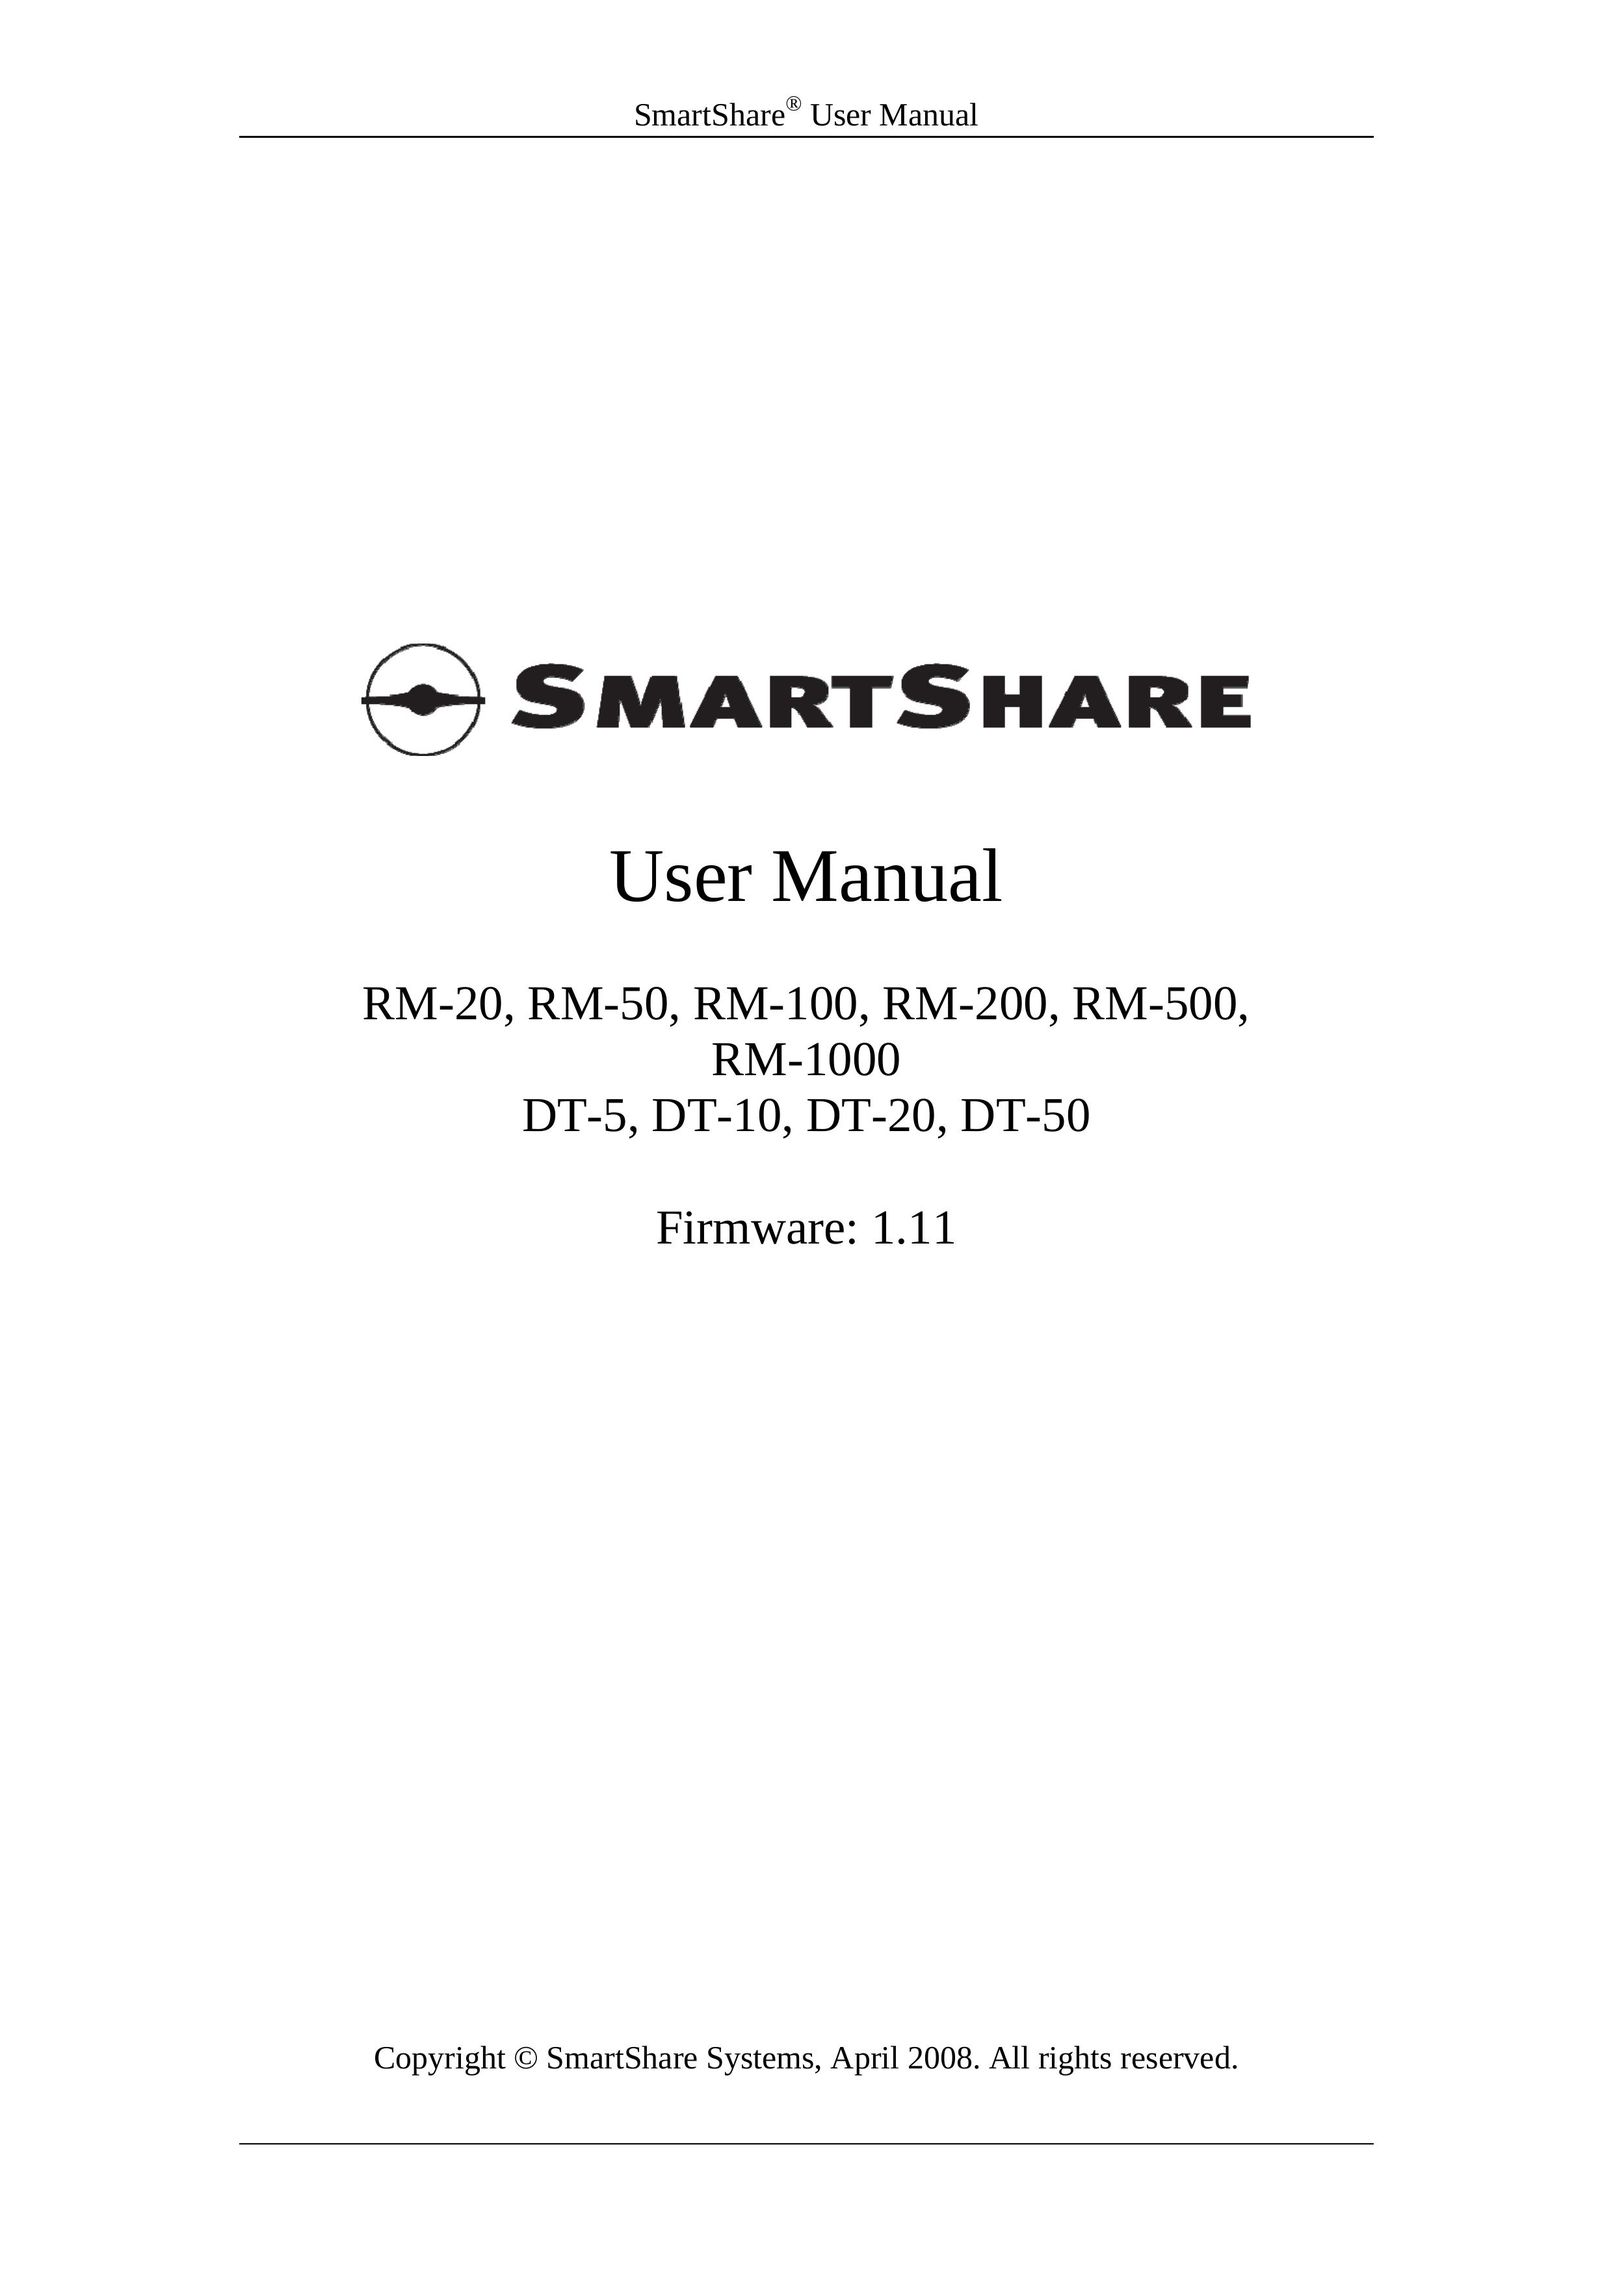 HP (Hewlett-Packard) DT-50 Network Router User Manual